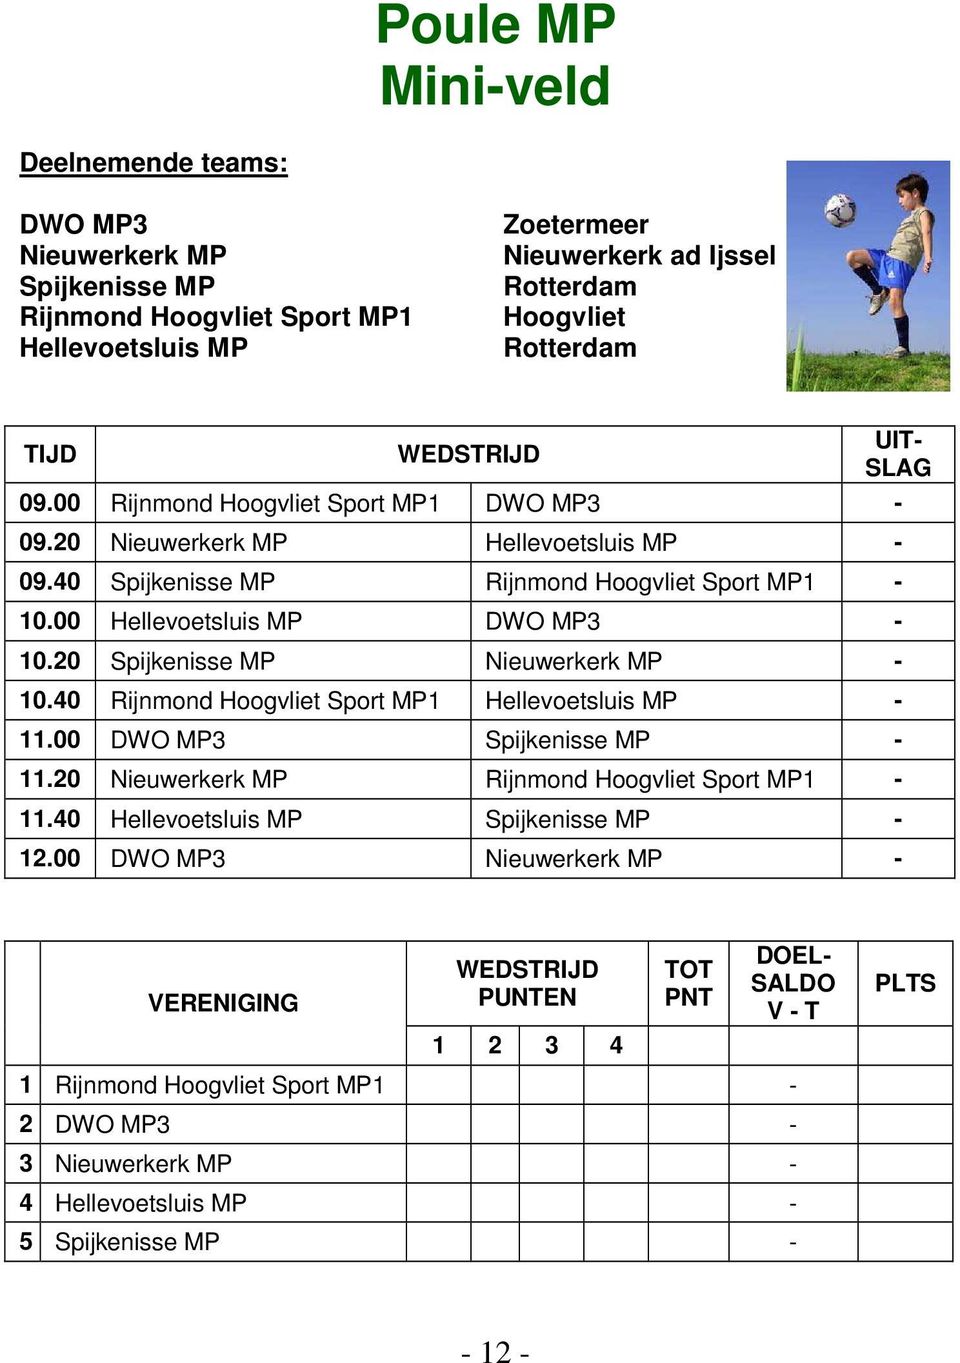 20 Spijkenisse MP Nieuwerkerk MP - 10.40 Rijnmond Sport MP1 Hellevoetsluis MP - 11.00 DWO MP3 Spijkenisse MP - 11.20 Nieuwerkerk MP Rijnmond Sport MP1-11.